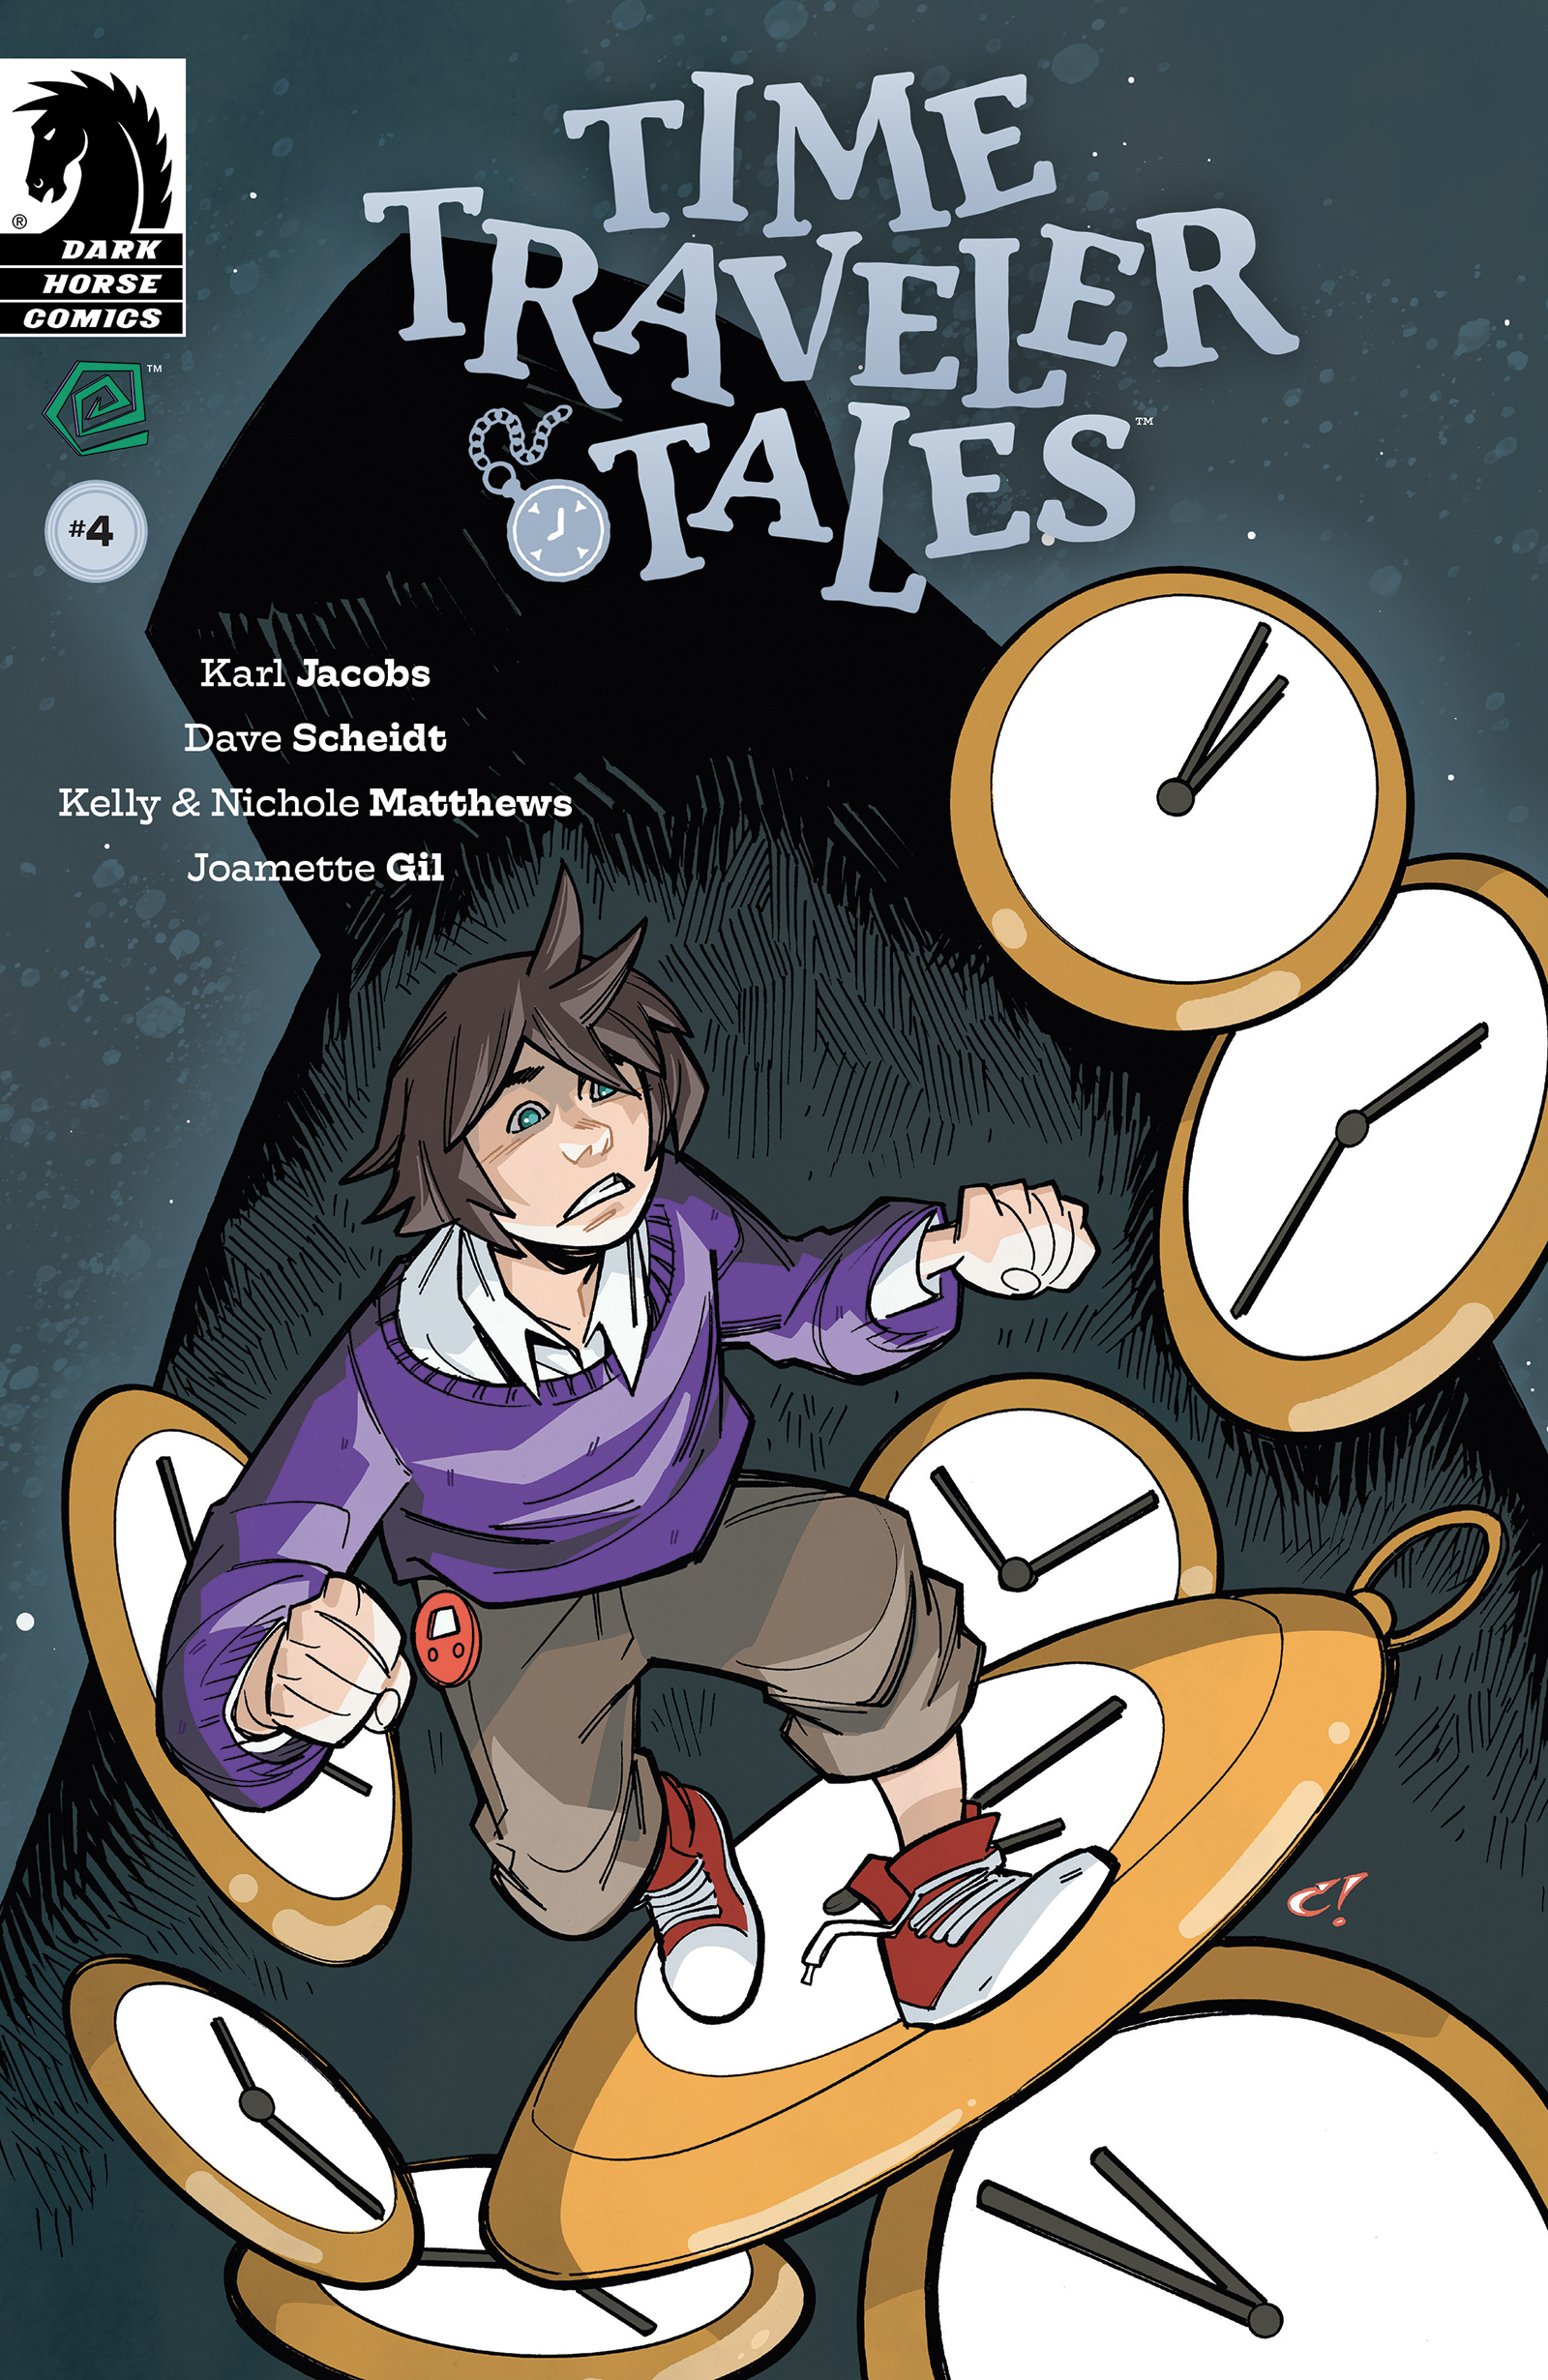 Time Traveler Tales #4 full cover